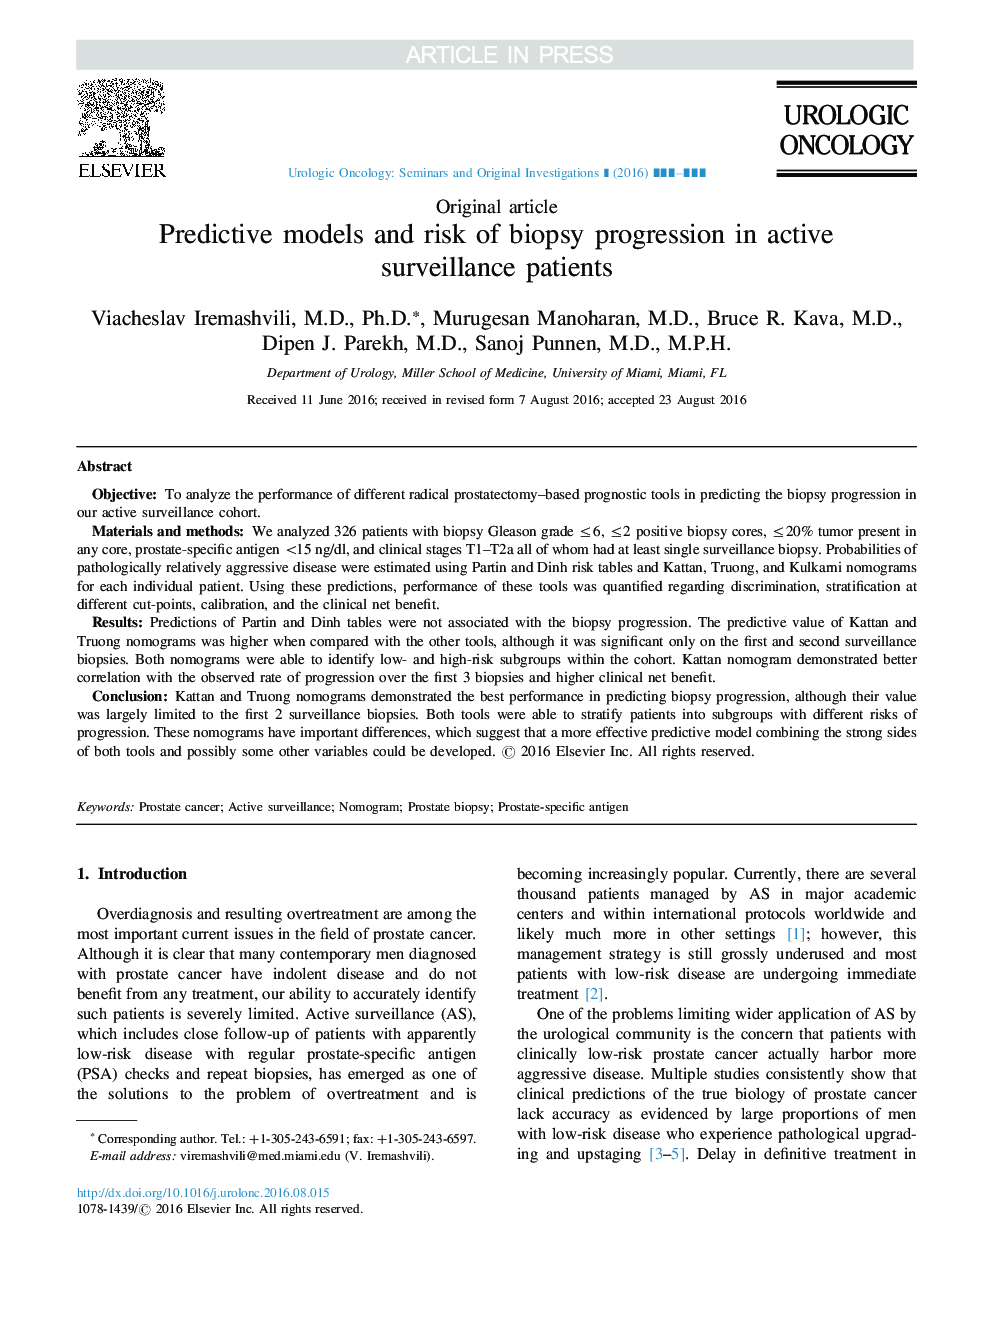 مدل های پیش بینی کننده و خطر پیشرفت بیوپسی در بیماران مراقبت های فعال 